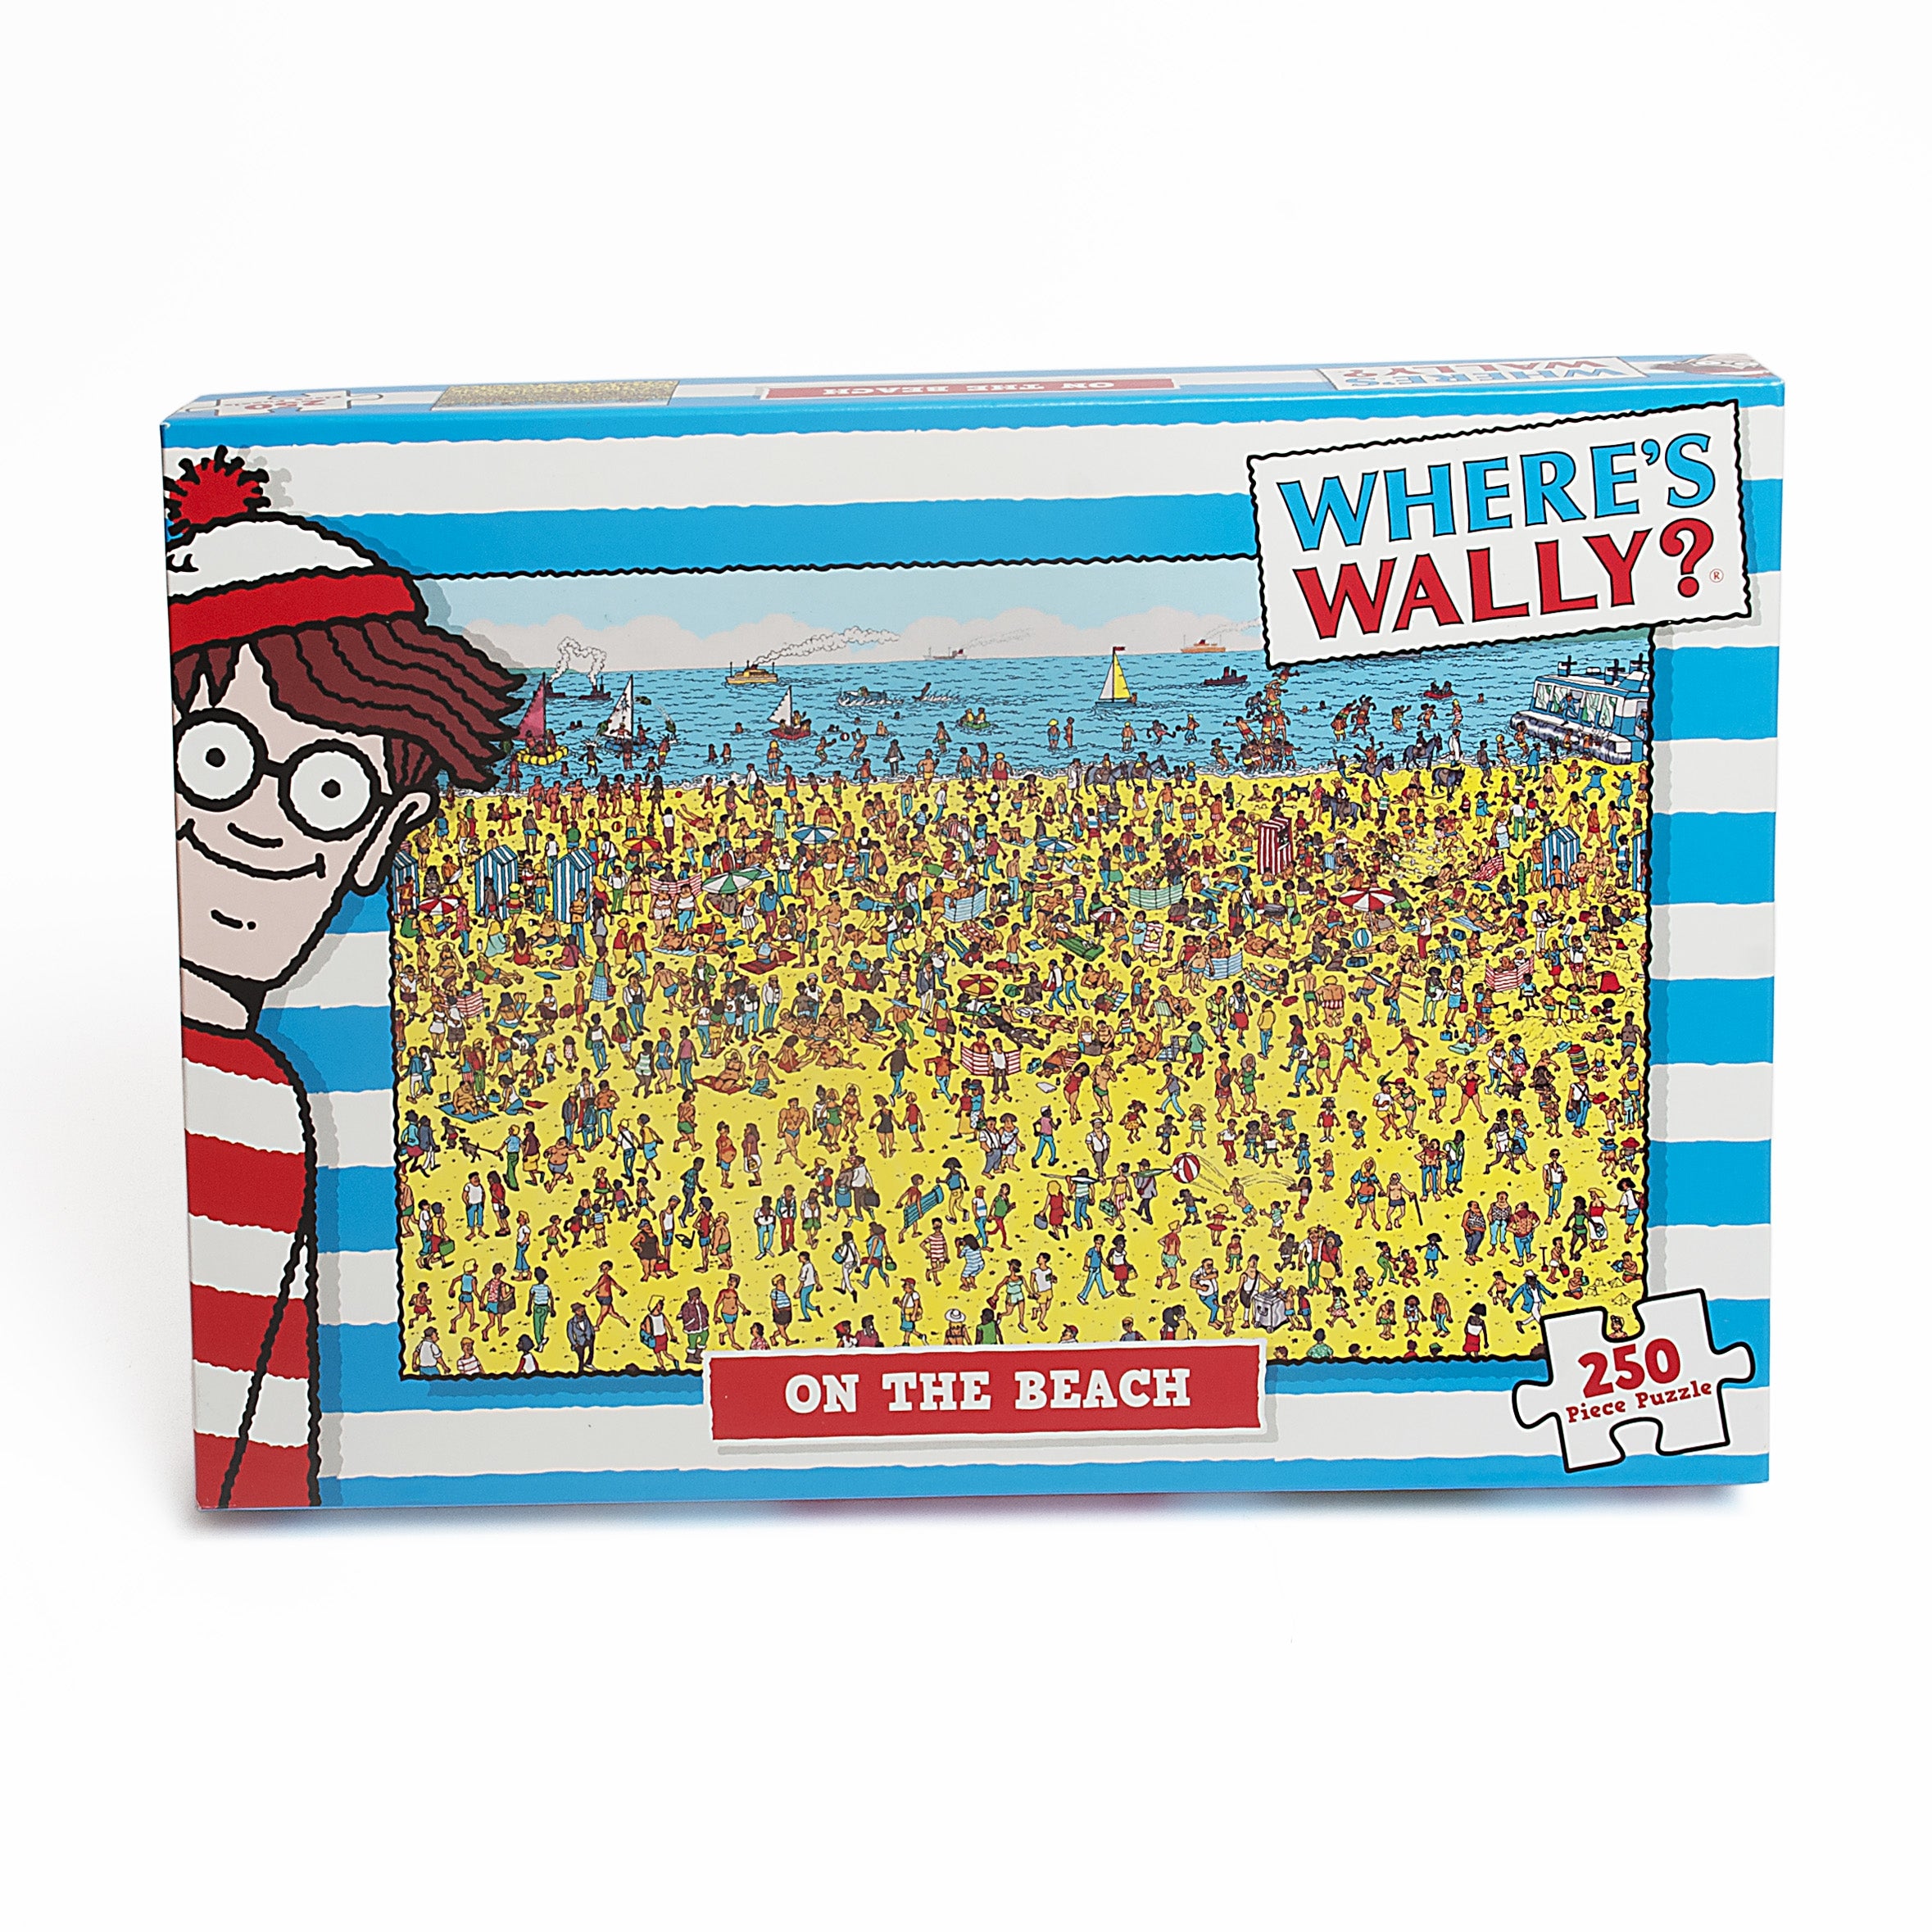 On the Beach - Wheres Wally